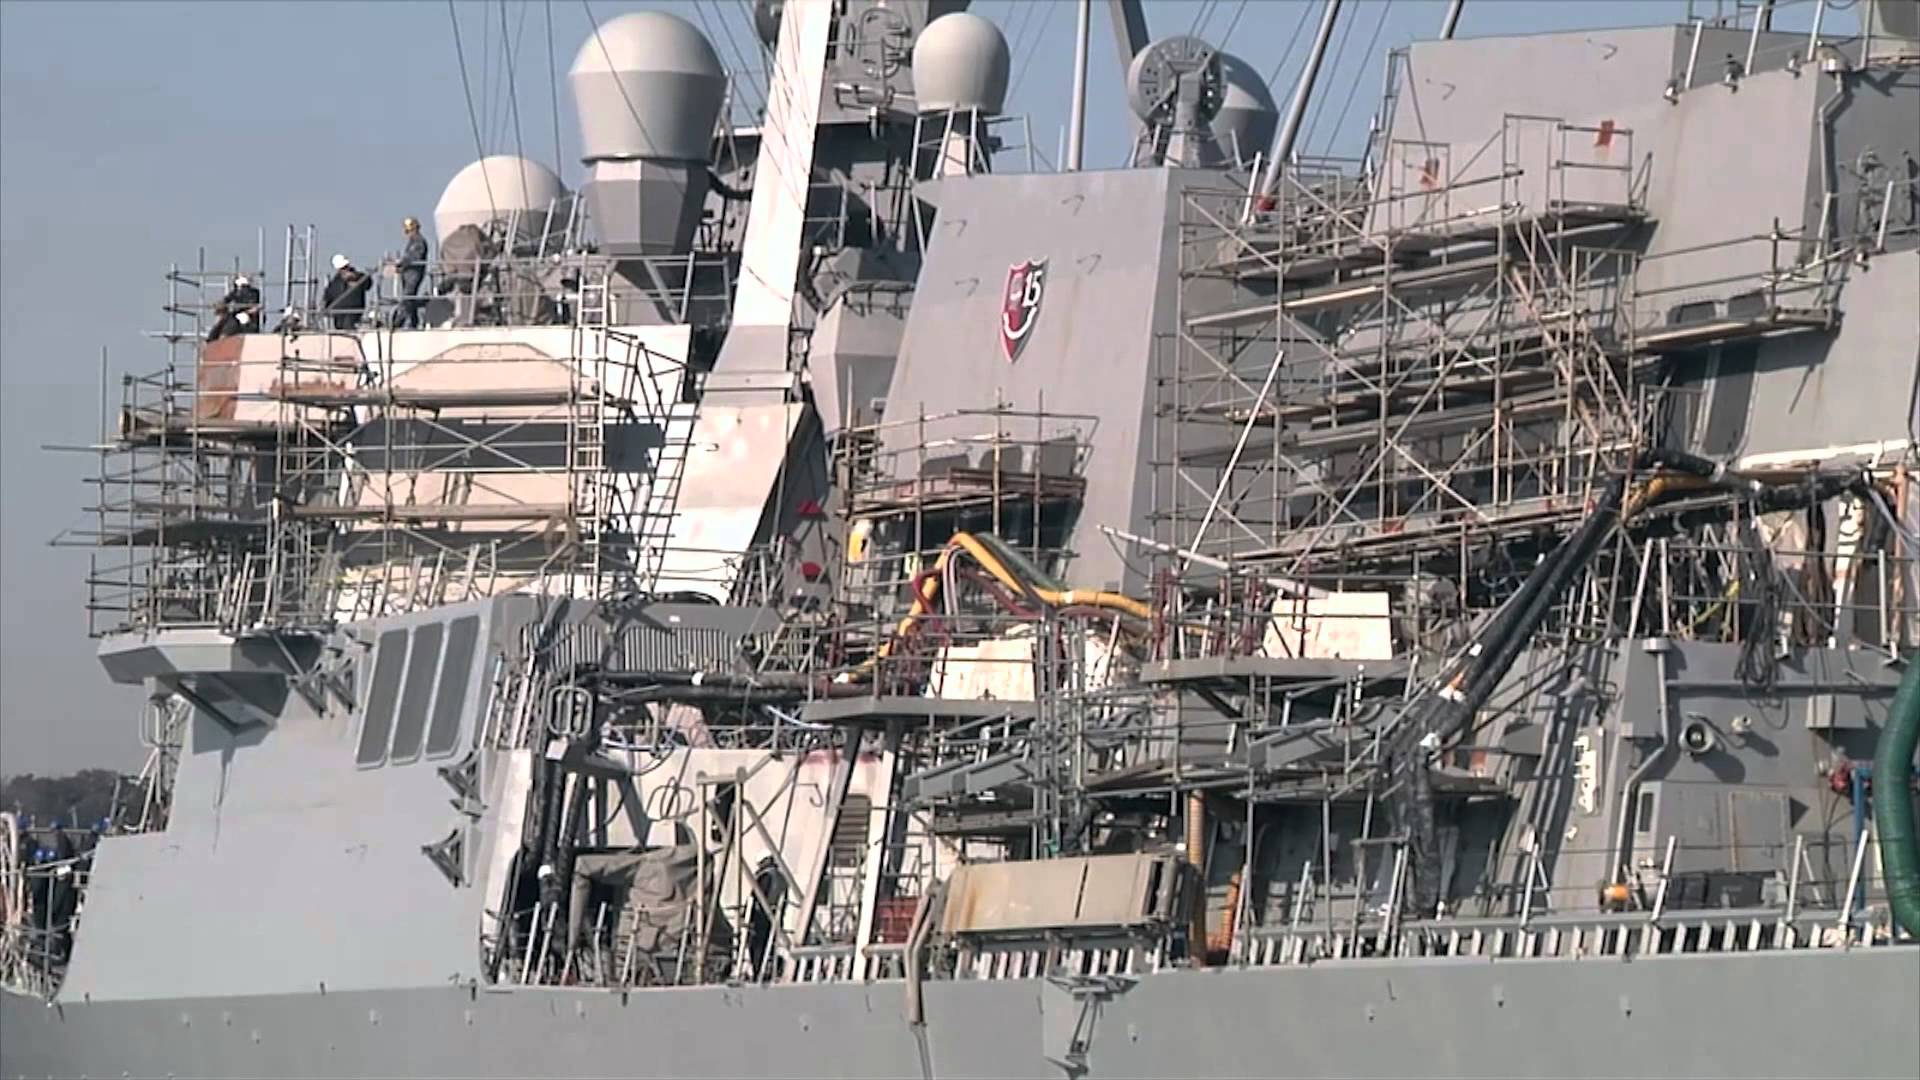 All Hands Update: USS John S. McCain Leaves Drydock